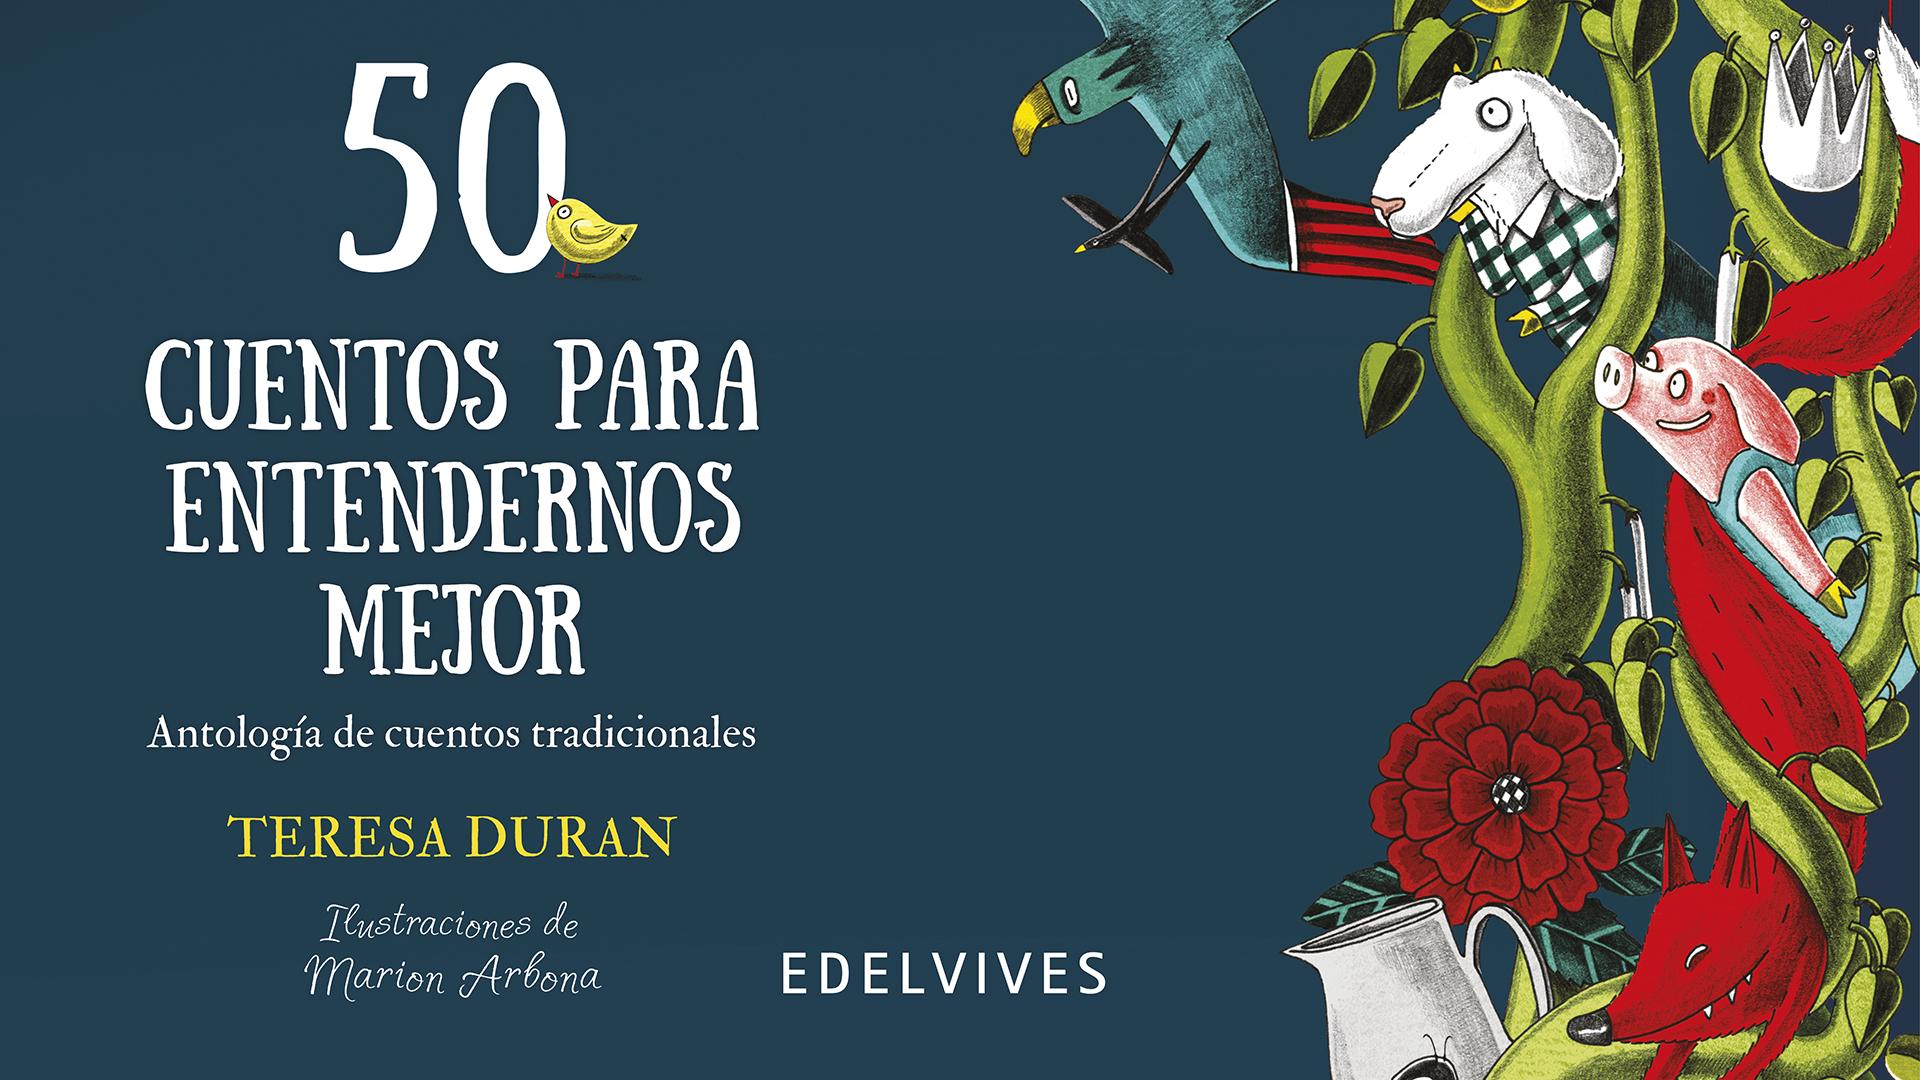 Teresa Duran nos cuenta 50 cuentos para entendernos mejor